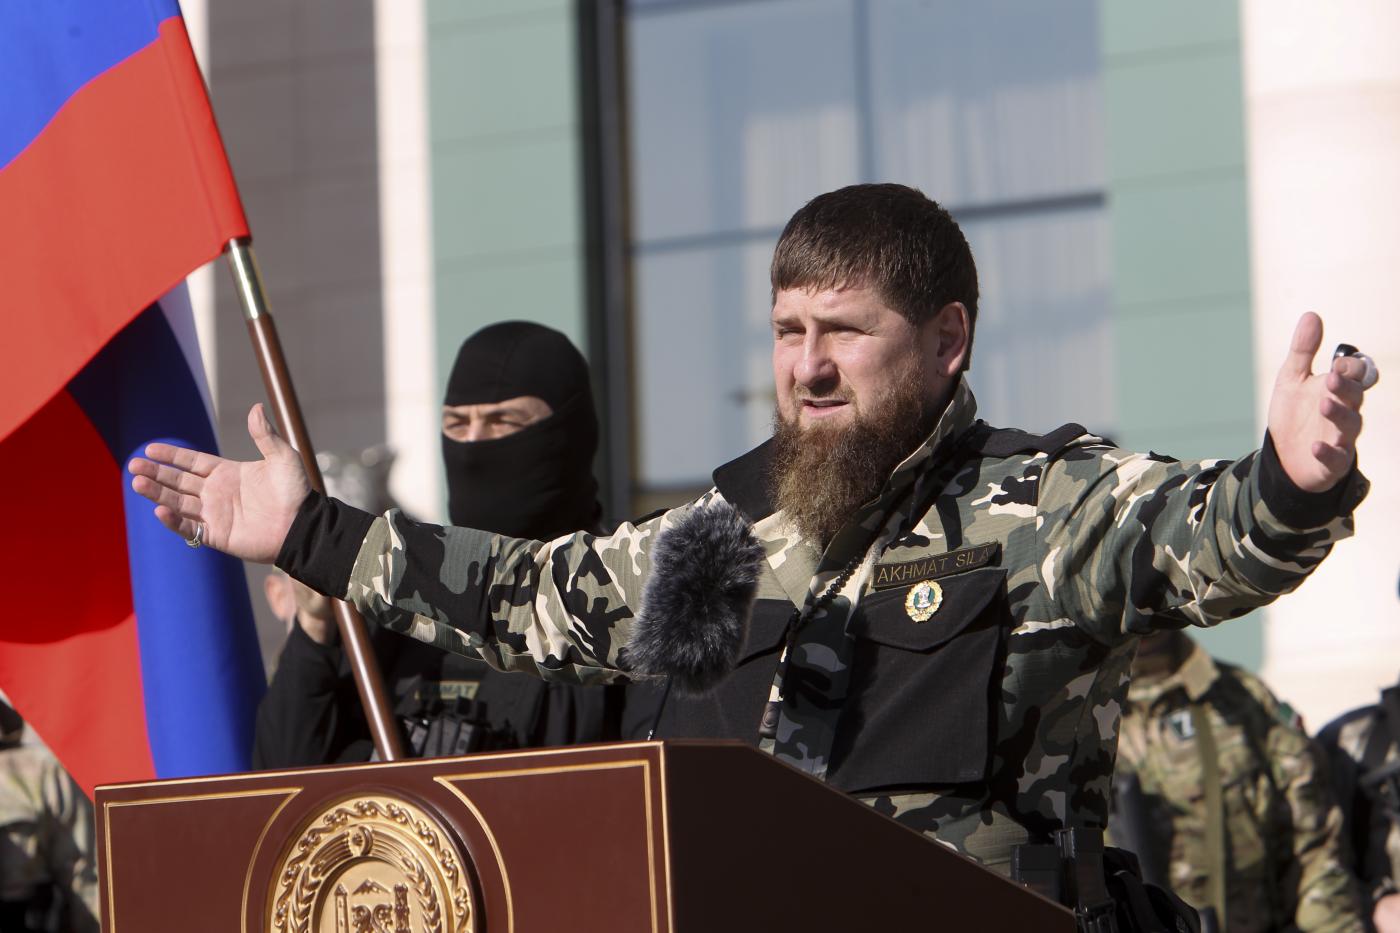 Il tagliagola ceceno Kadyrov esulta: "Pulizia totale della città di Severodonetsk"